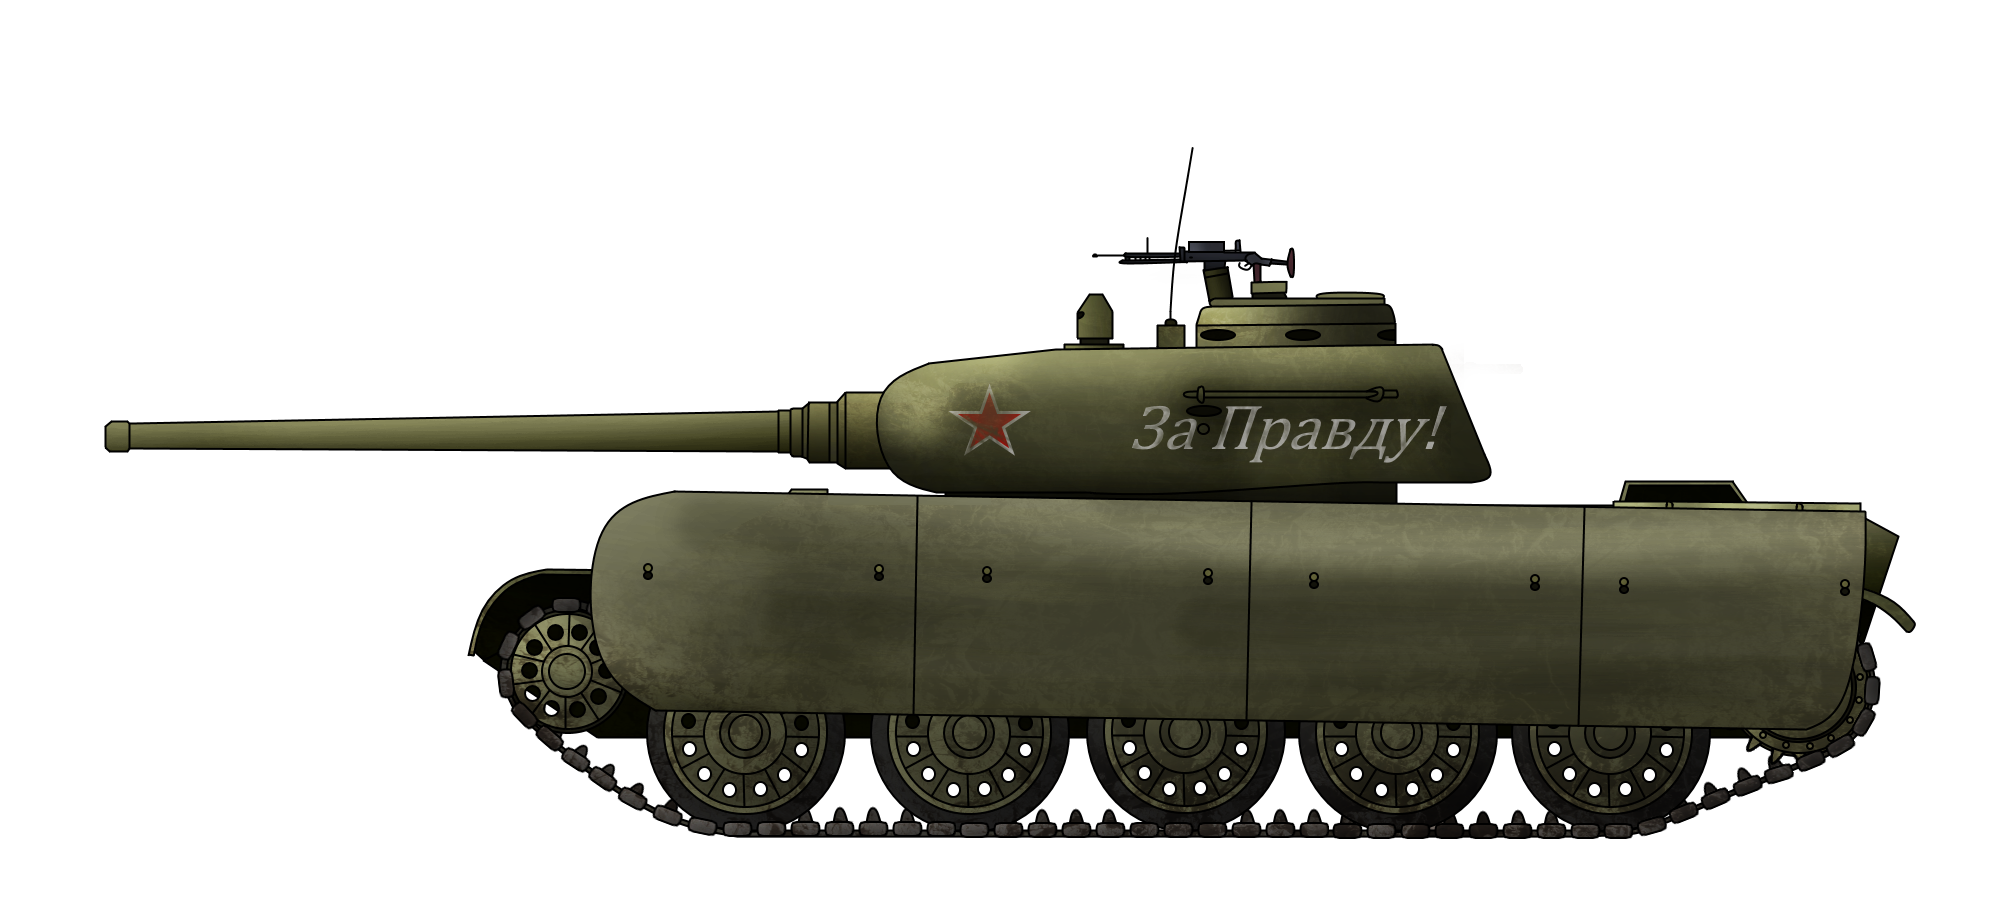 Идеальный танк Т-44АМ Прорыв  для противостояния Нацисткой Германии и странам Оси в 1941 году.